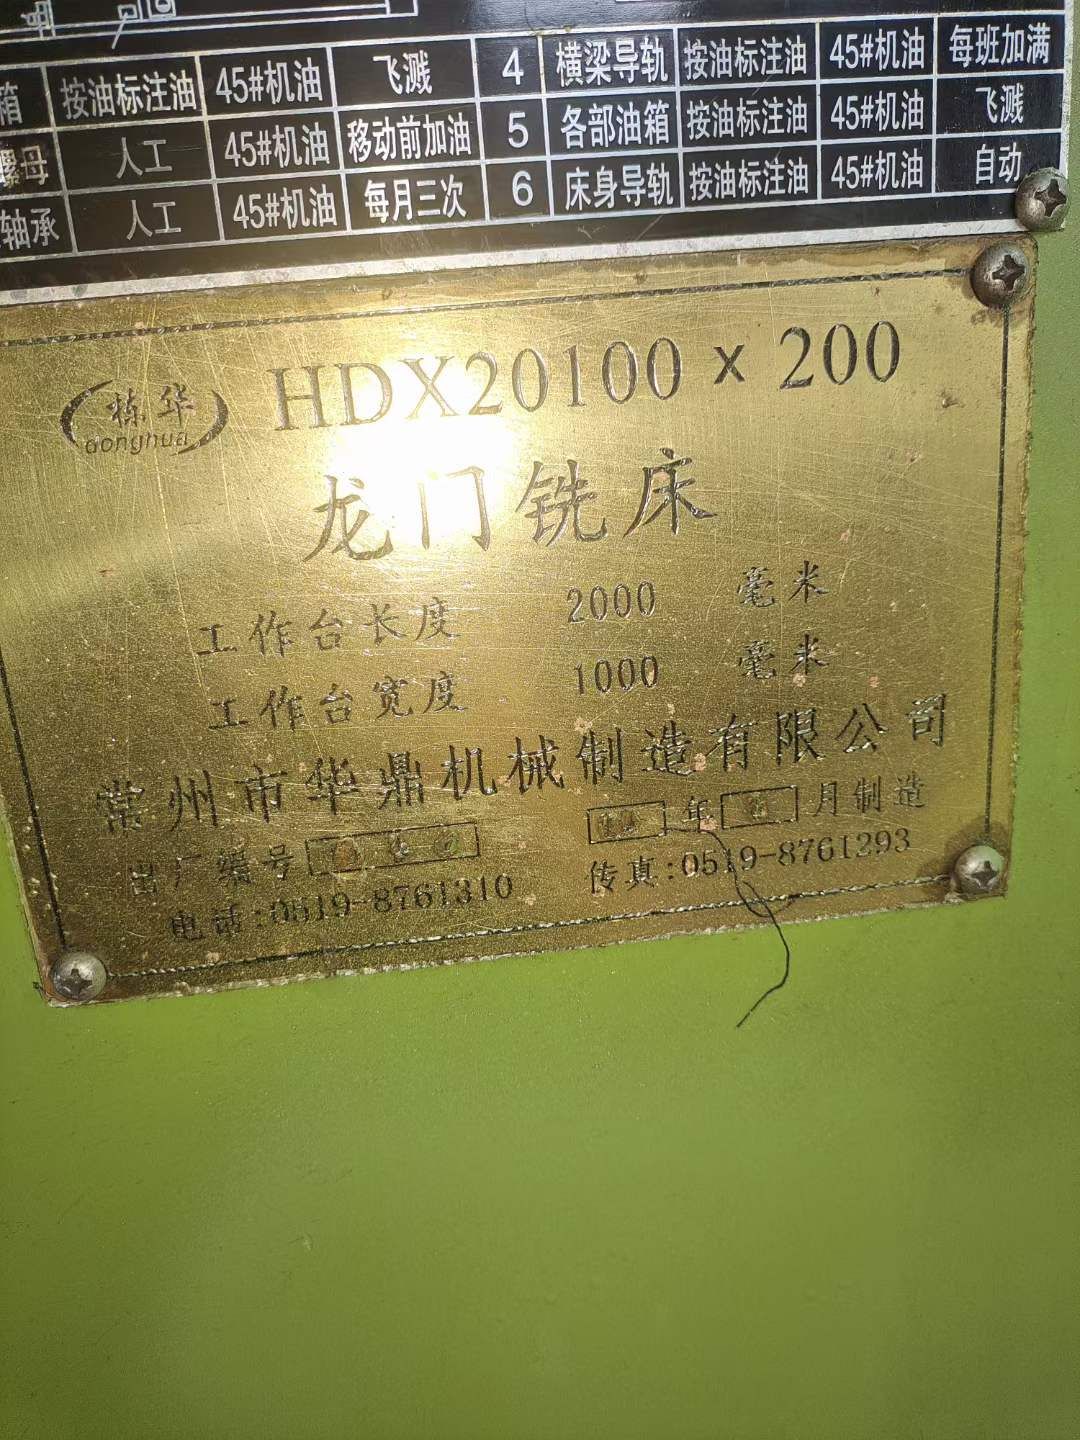 处理二手华鼎HDX20100x200龙门铣主轴转速640